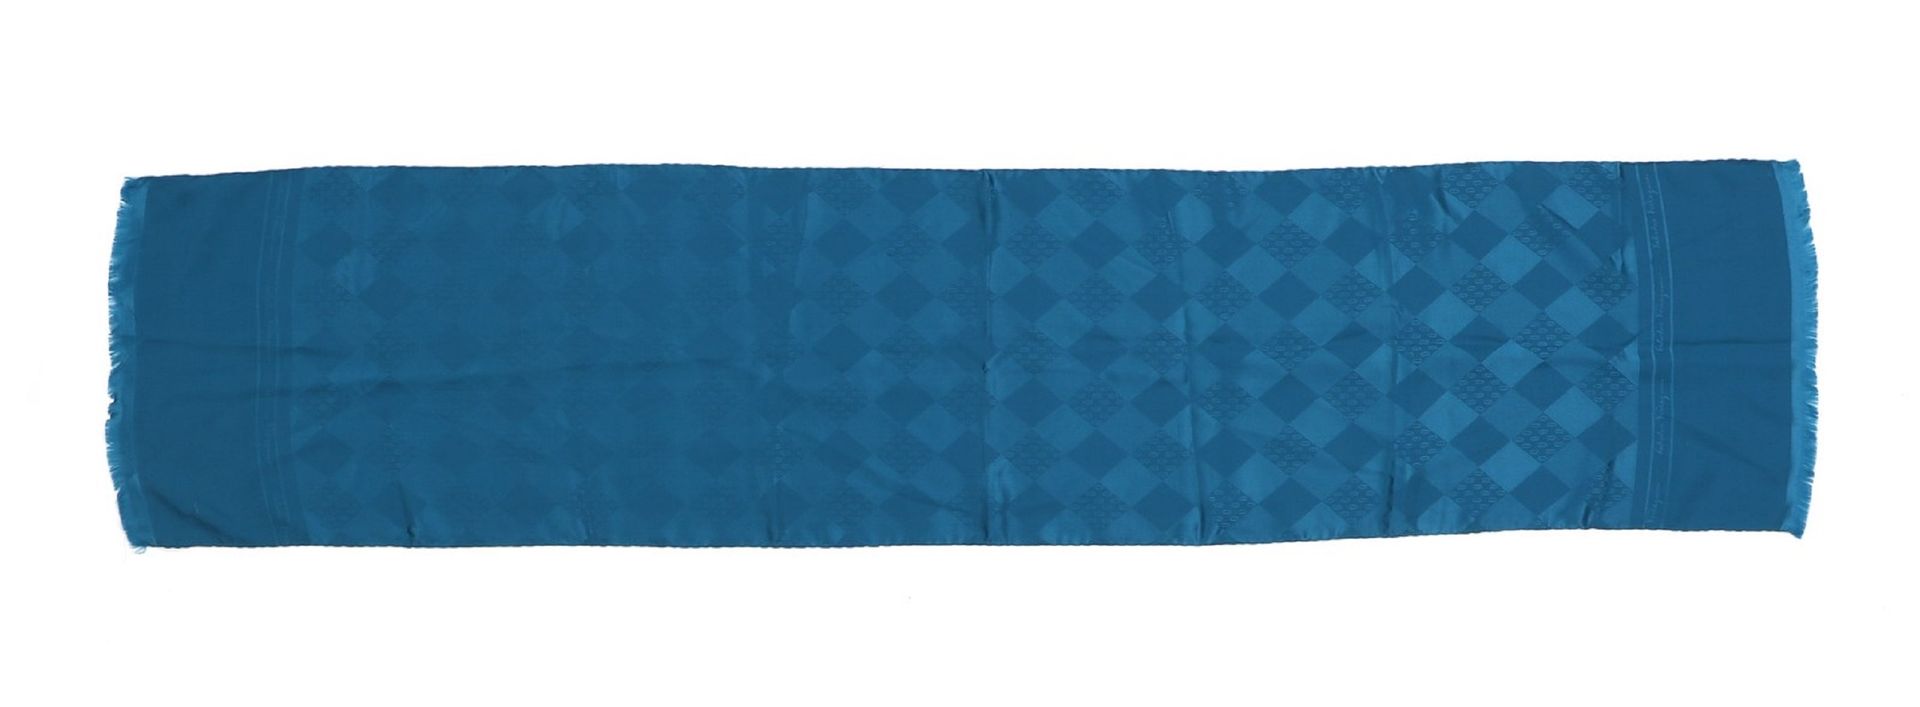 SALVATORE FERRAGAMO Teal green silk scarf. Blaugrüner Seidenschal. Seide. Cm 145&hellip;